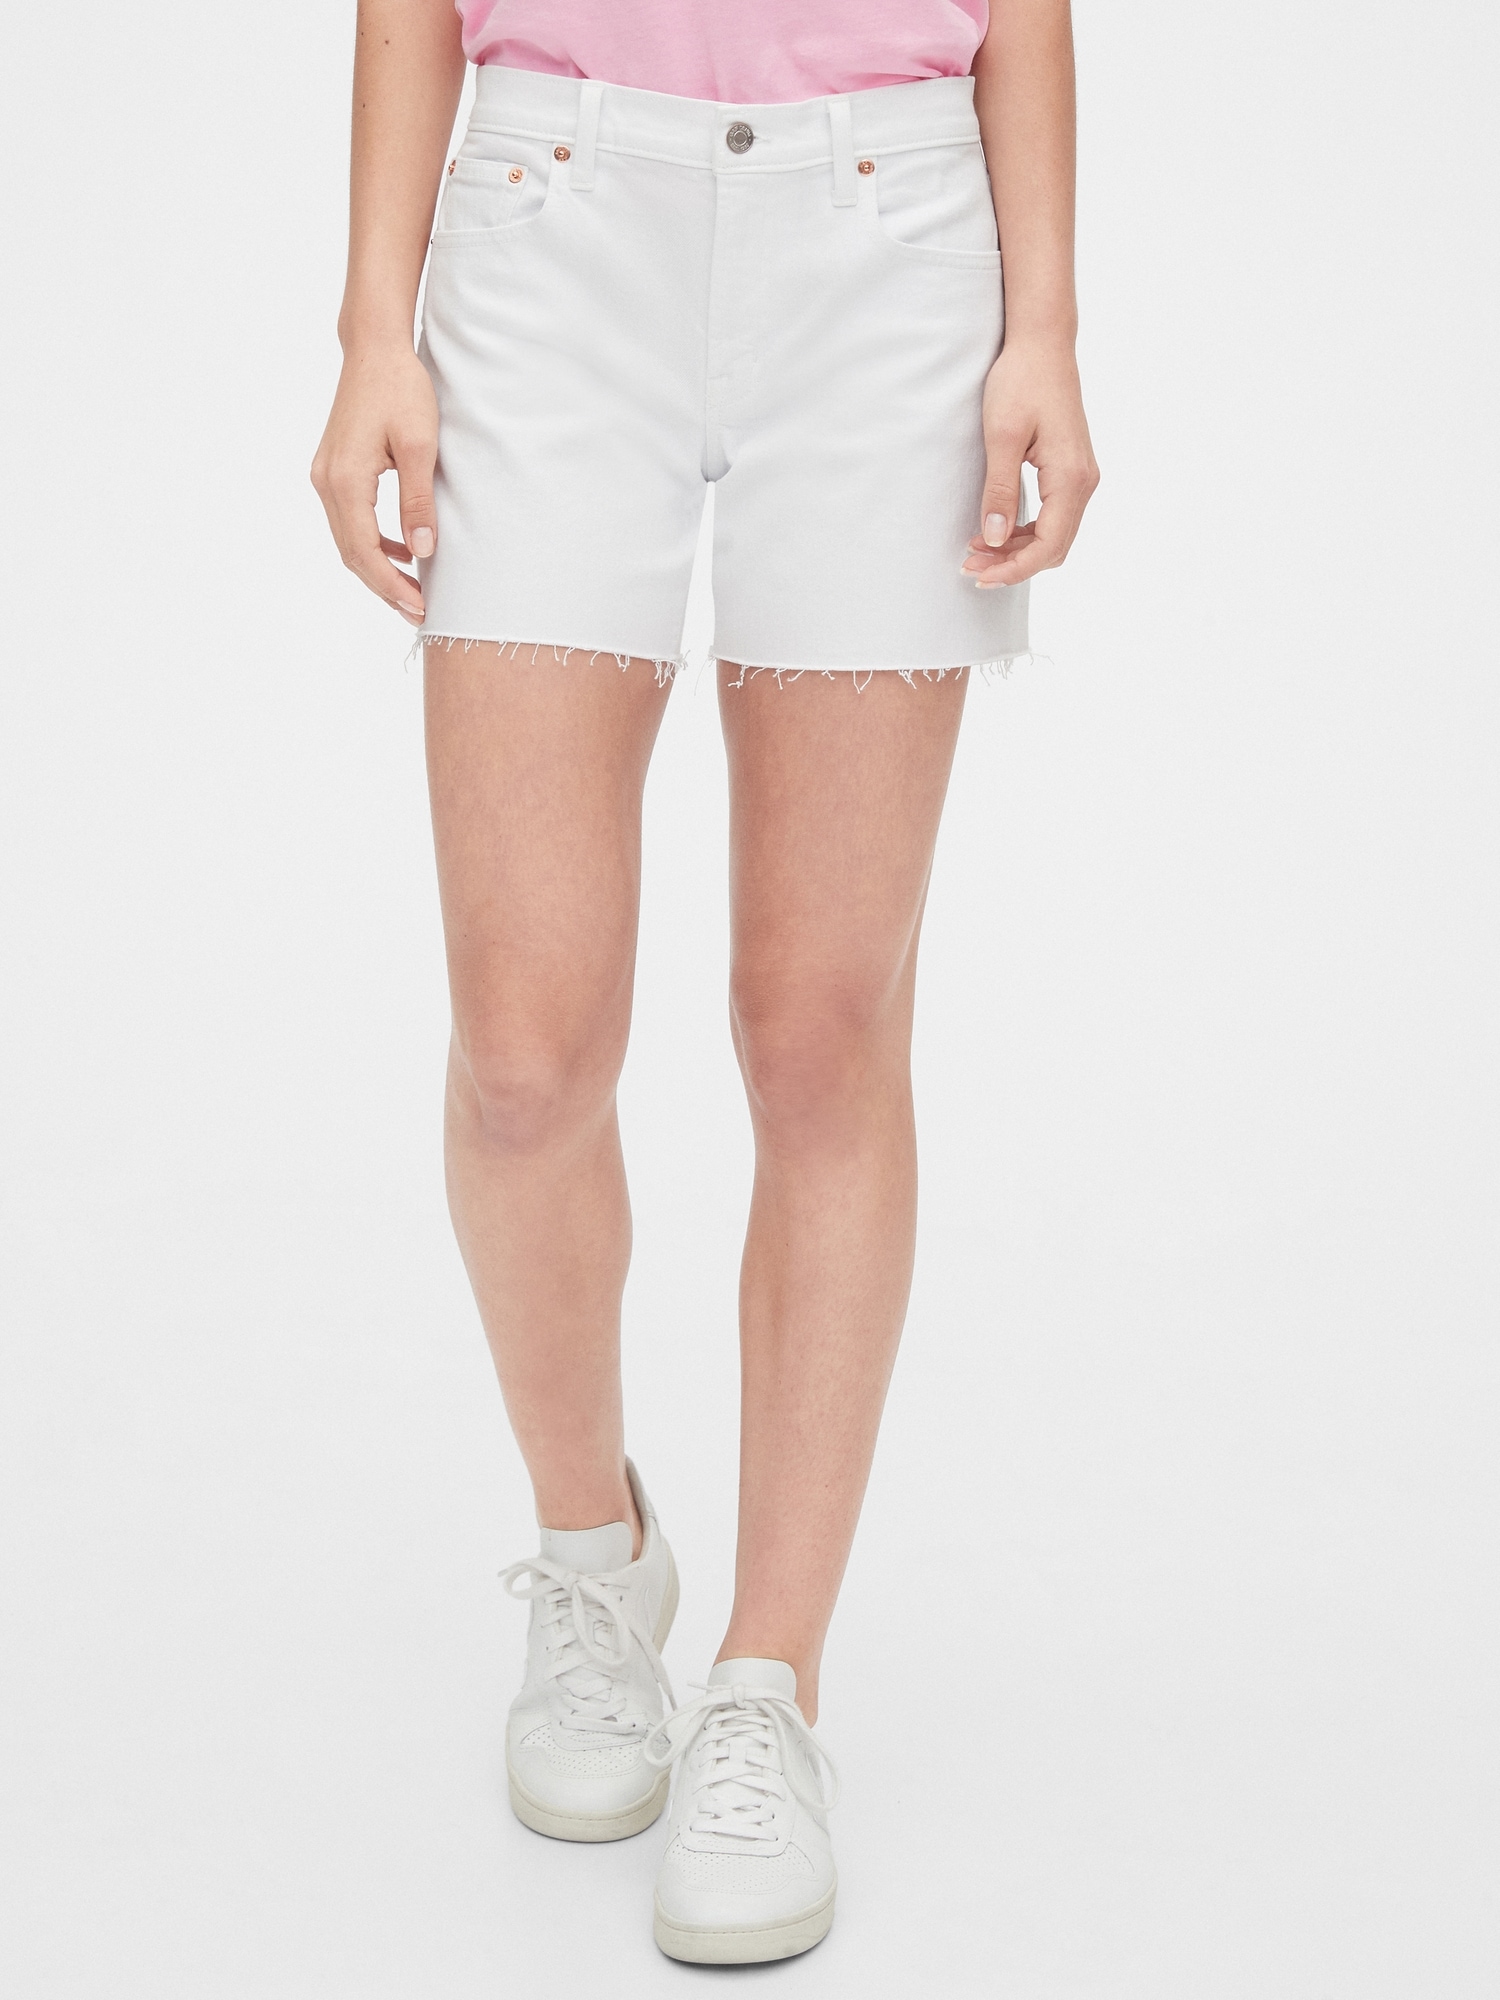 gap white denim shorts